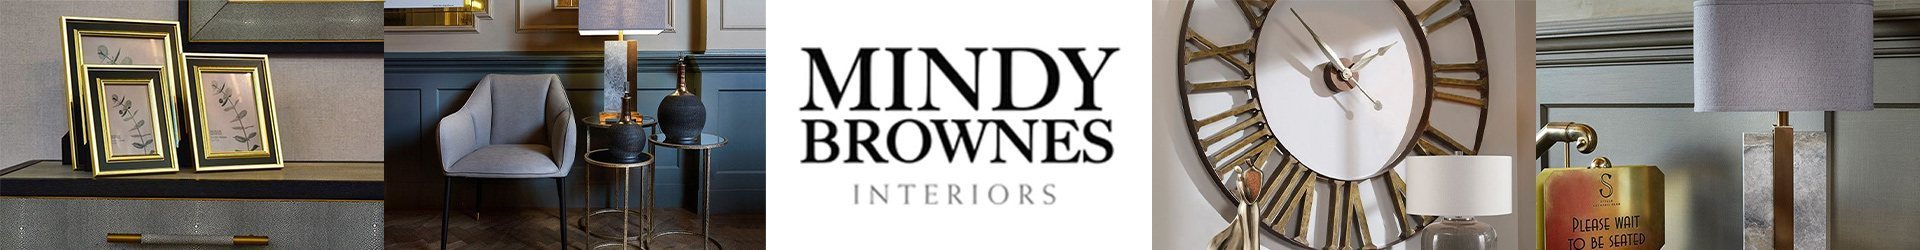 Mindy Brownes